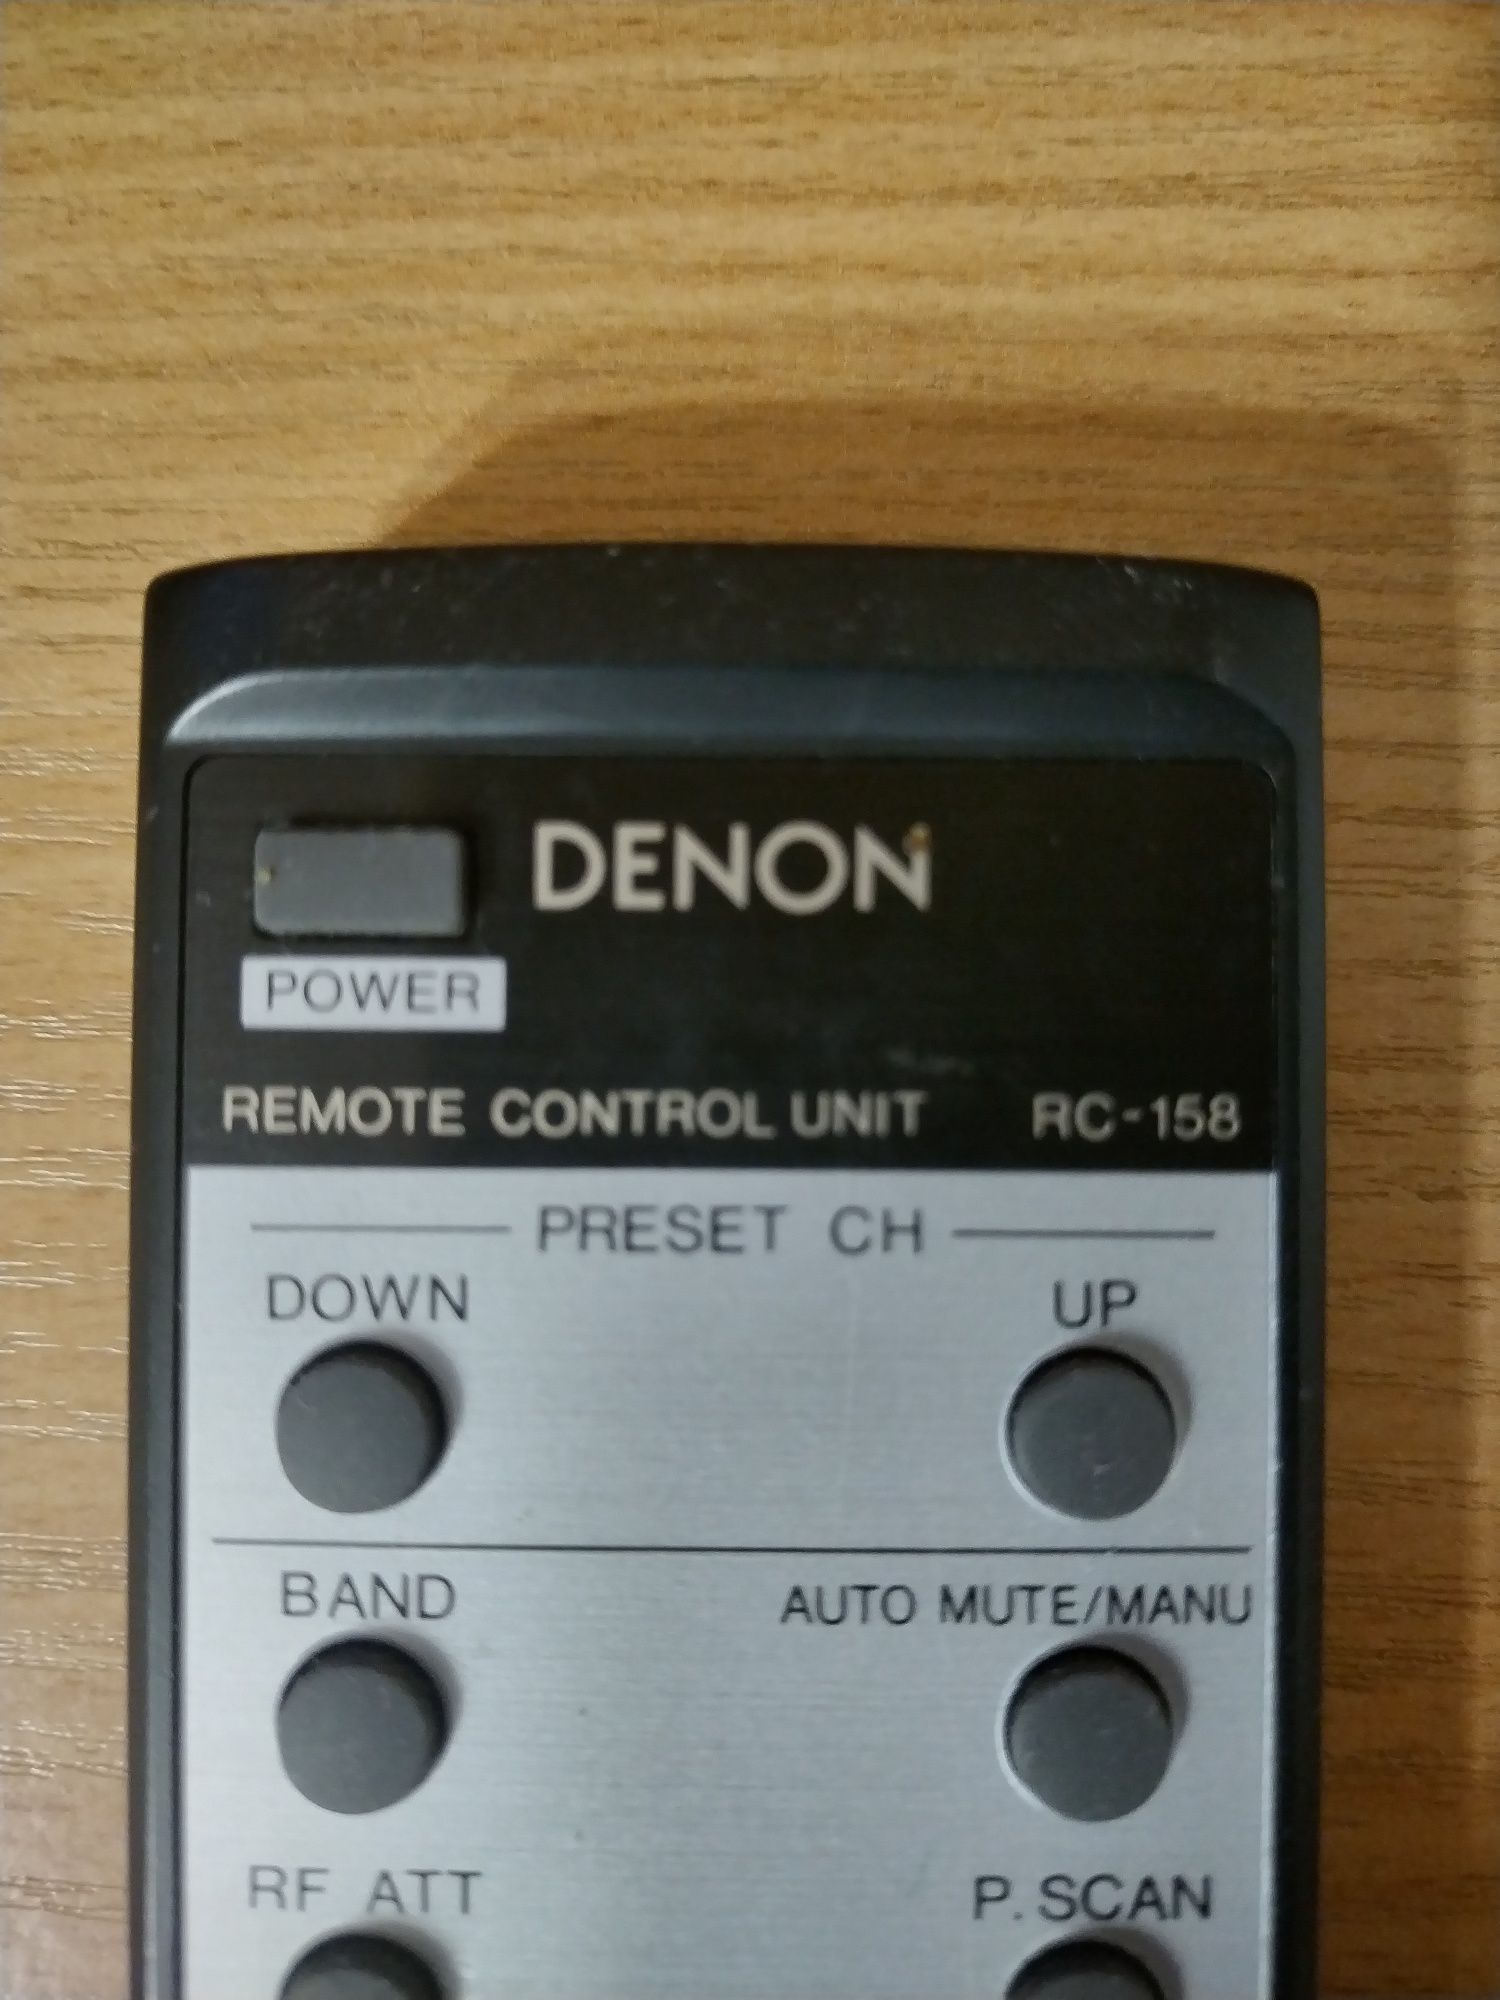 Дистанционно Denon rc-158